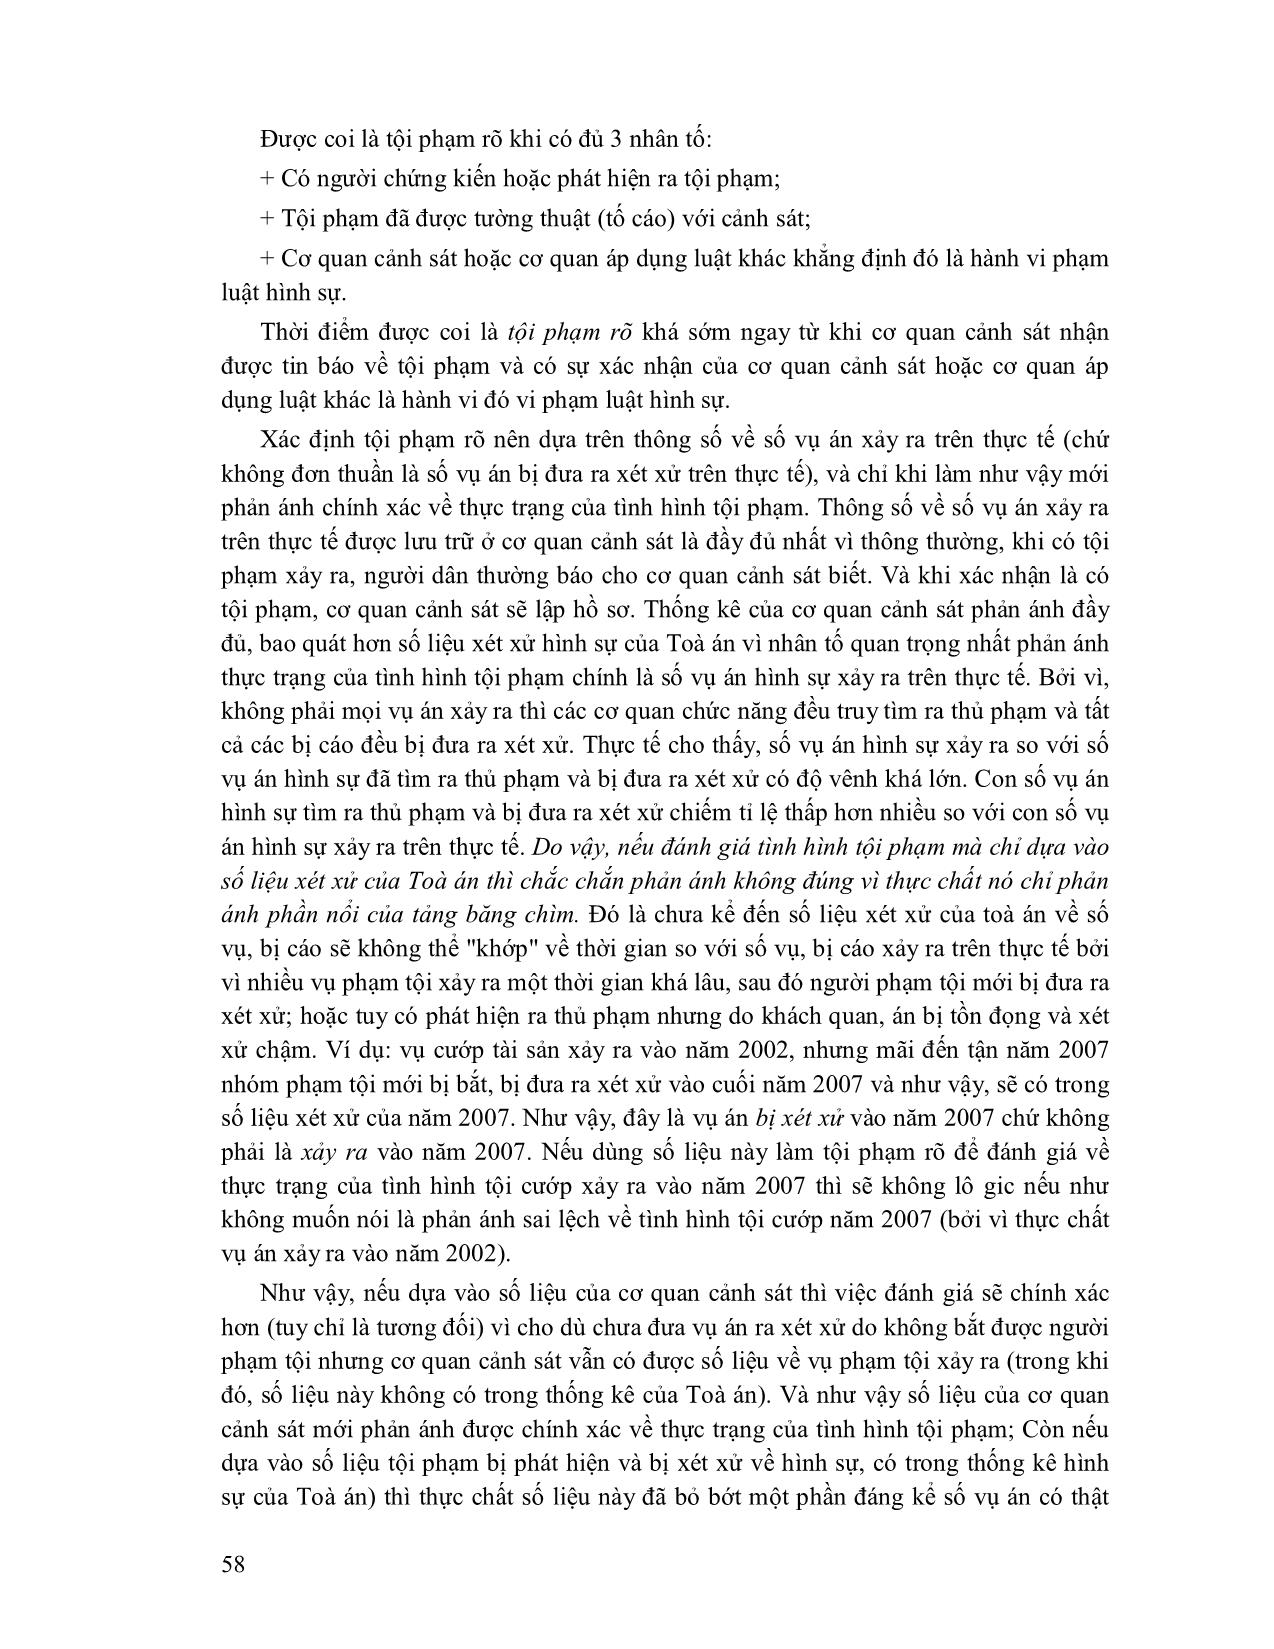 Giáo trình Tội phạm học (Phần 2) trang 3